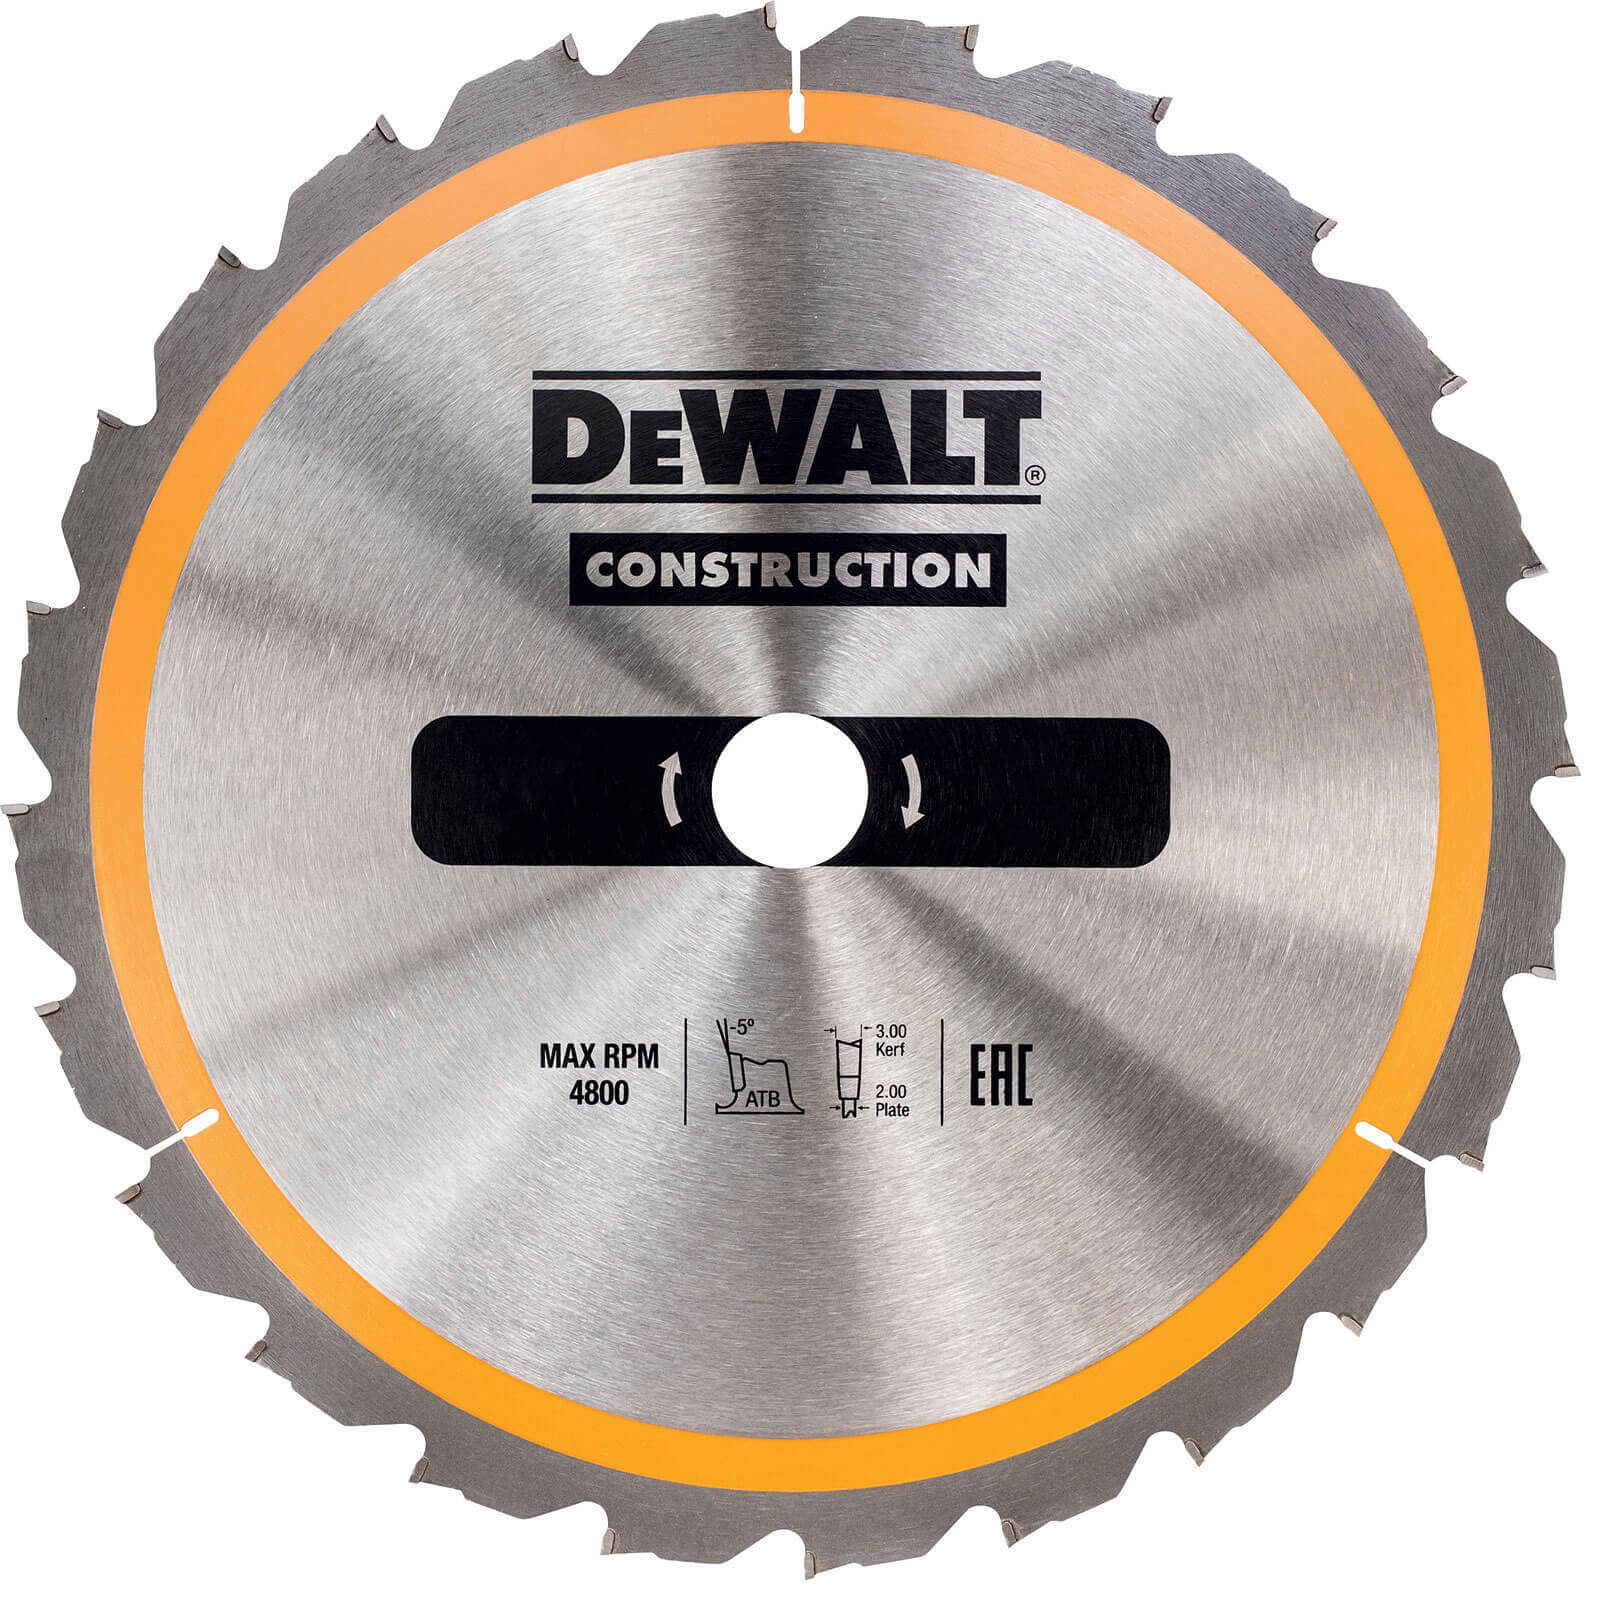 Photo of Dewalt Construction Circular Saw Blade 165mm 30t 20mm